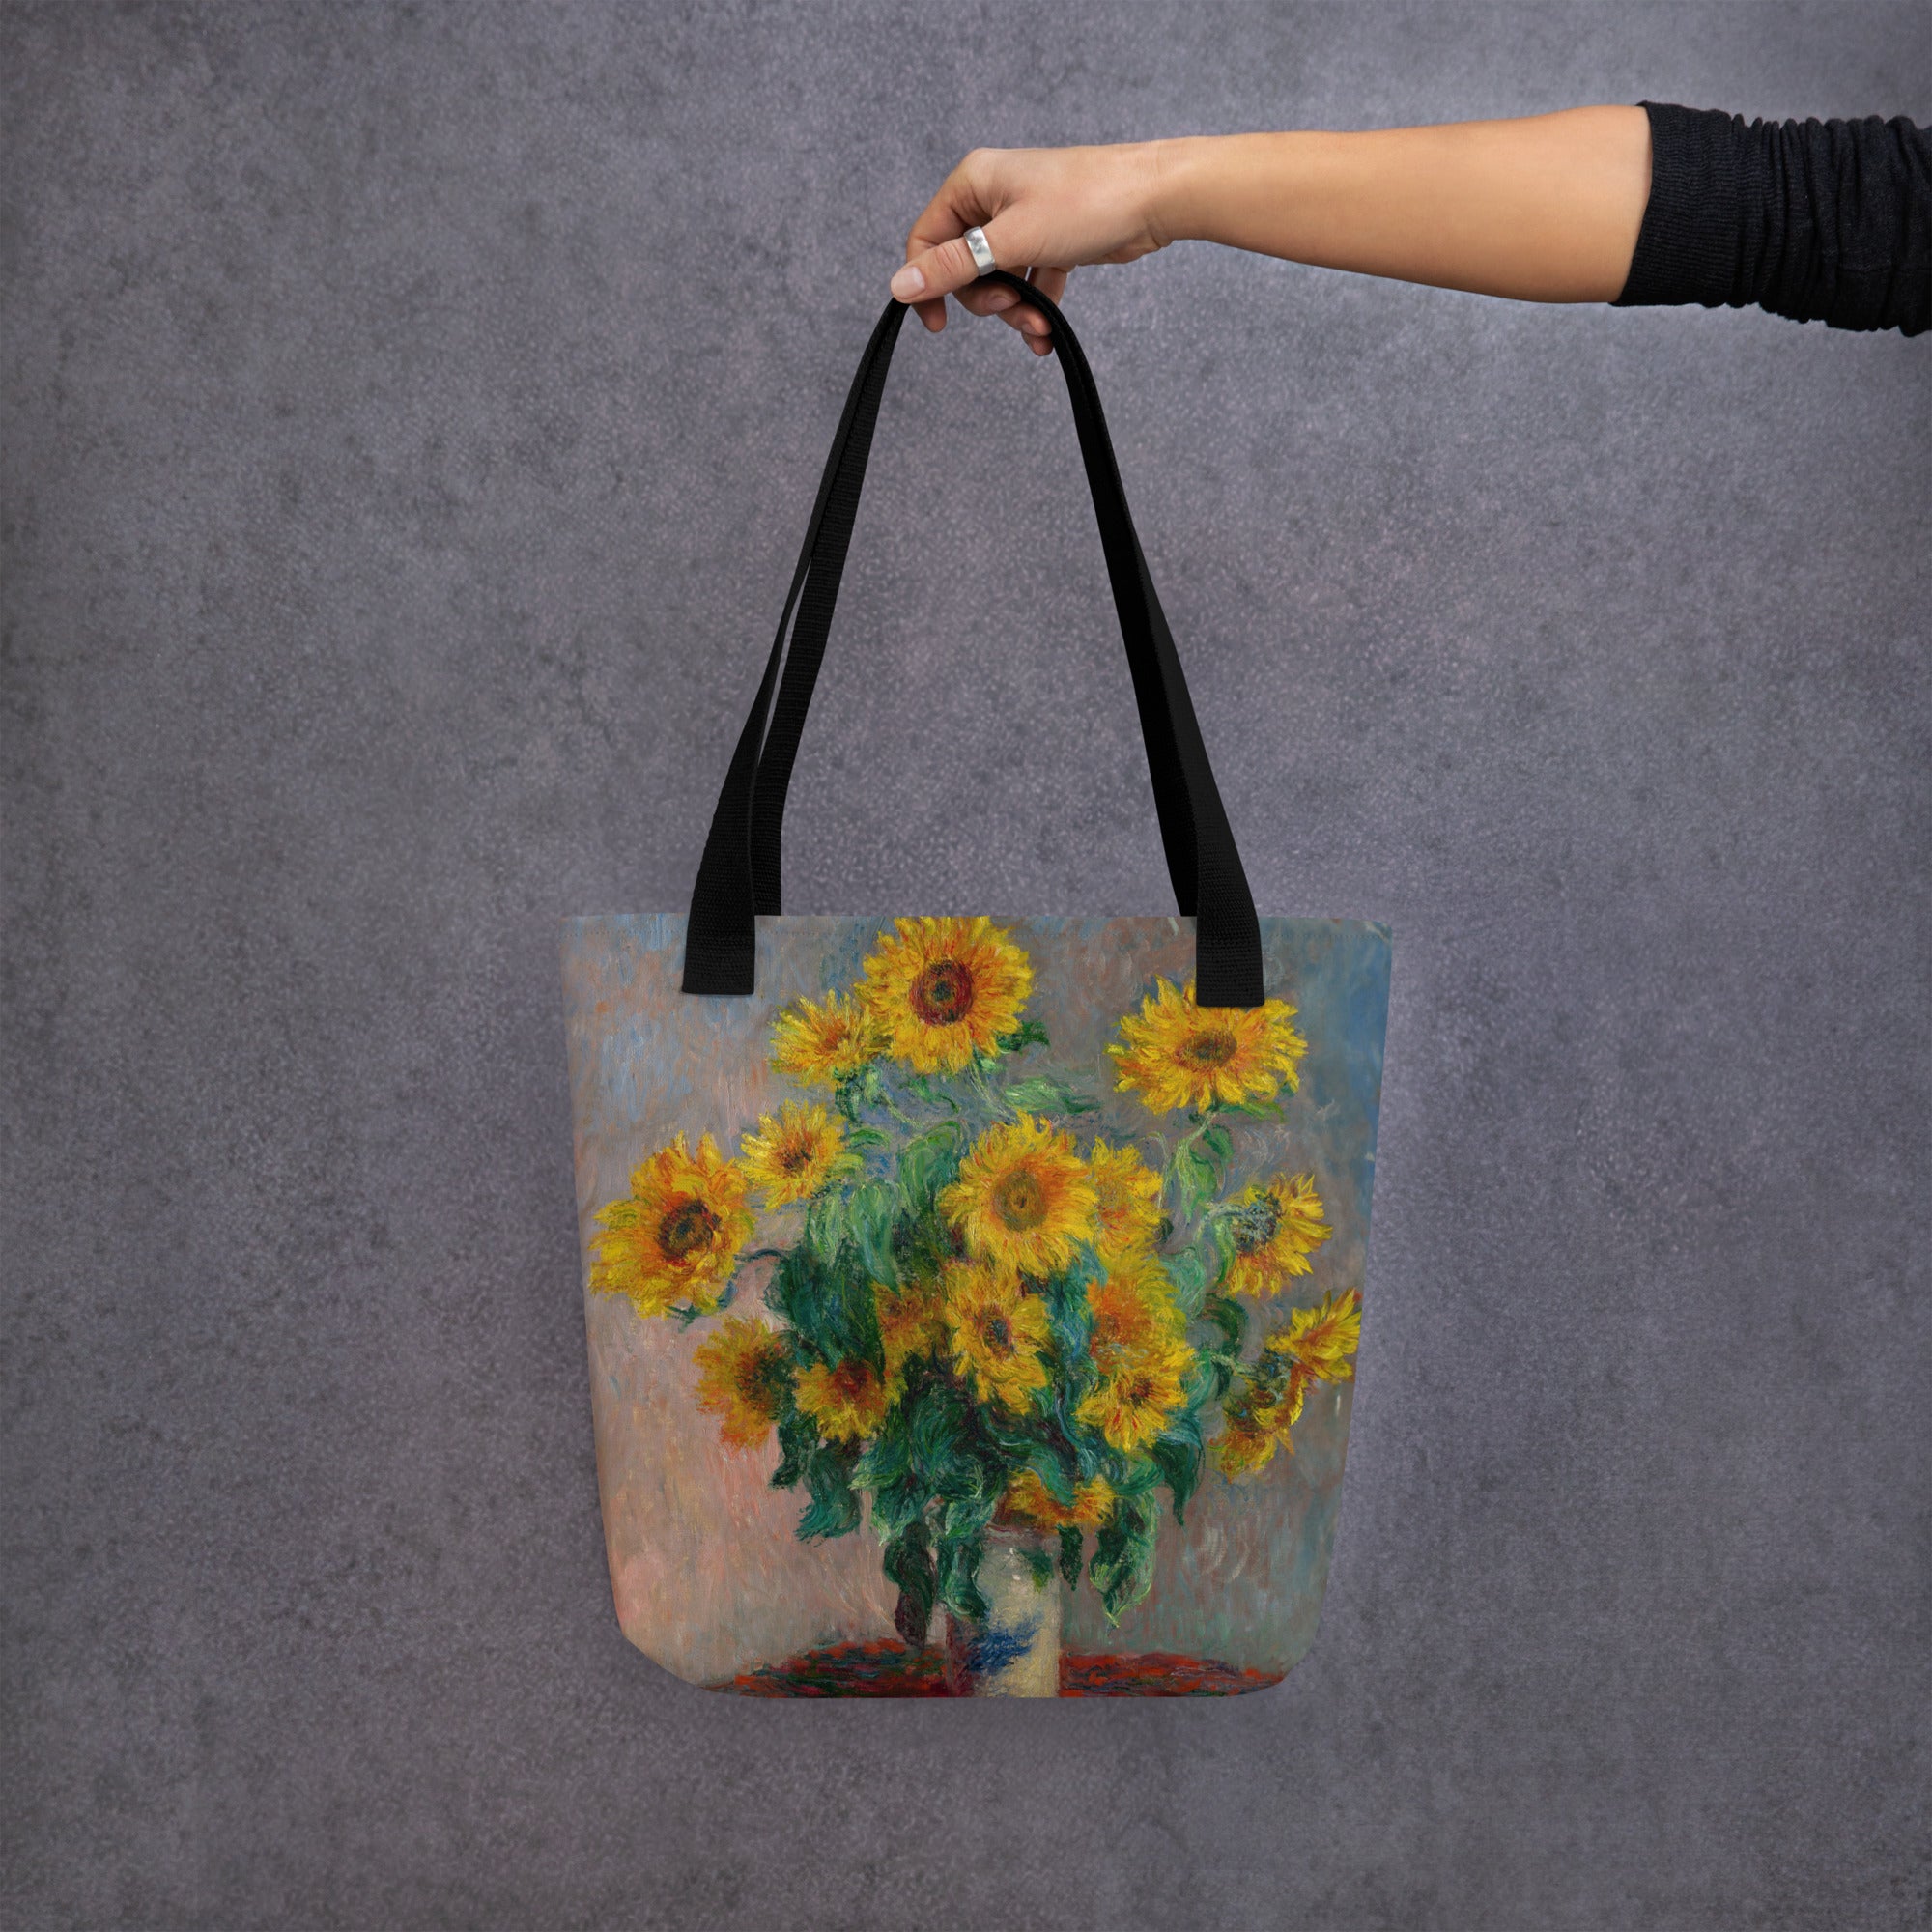 Claude Monet - Einkaufstasche mit berühmtem Gemälde „Sonnenblumenstrauß“ | Kunst-Einkaufstasche mit Allover-Print 